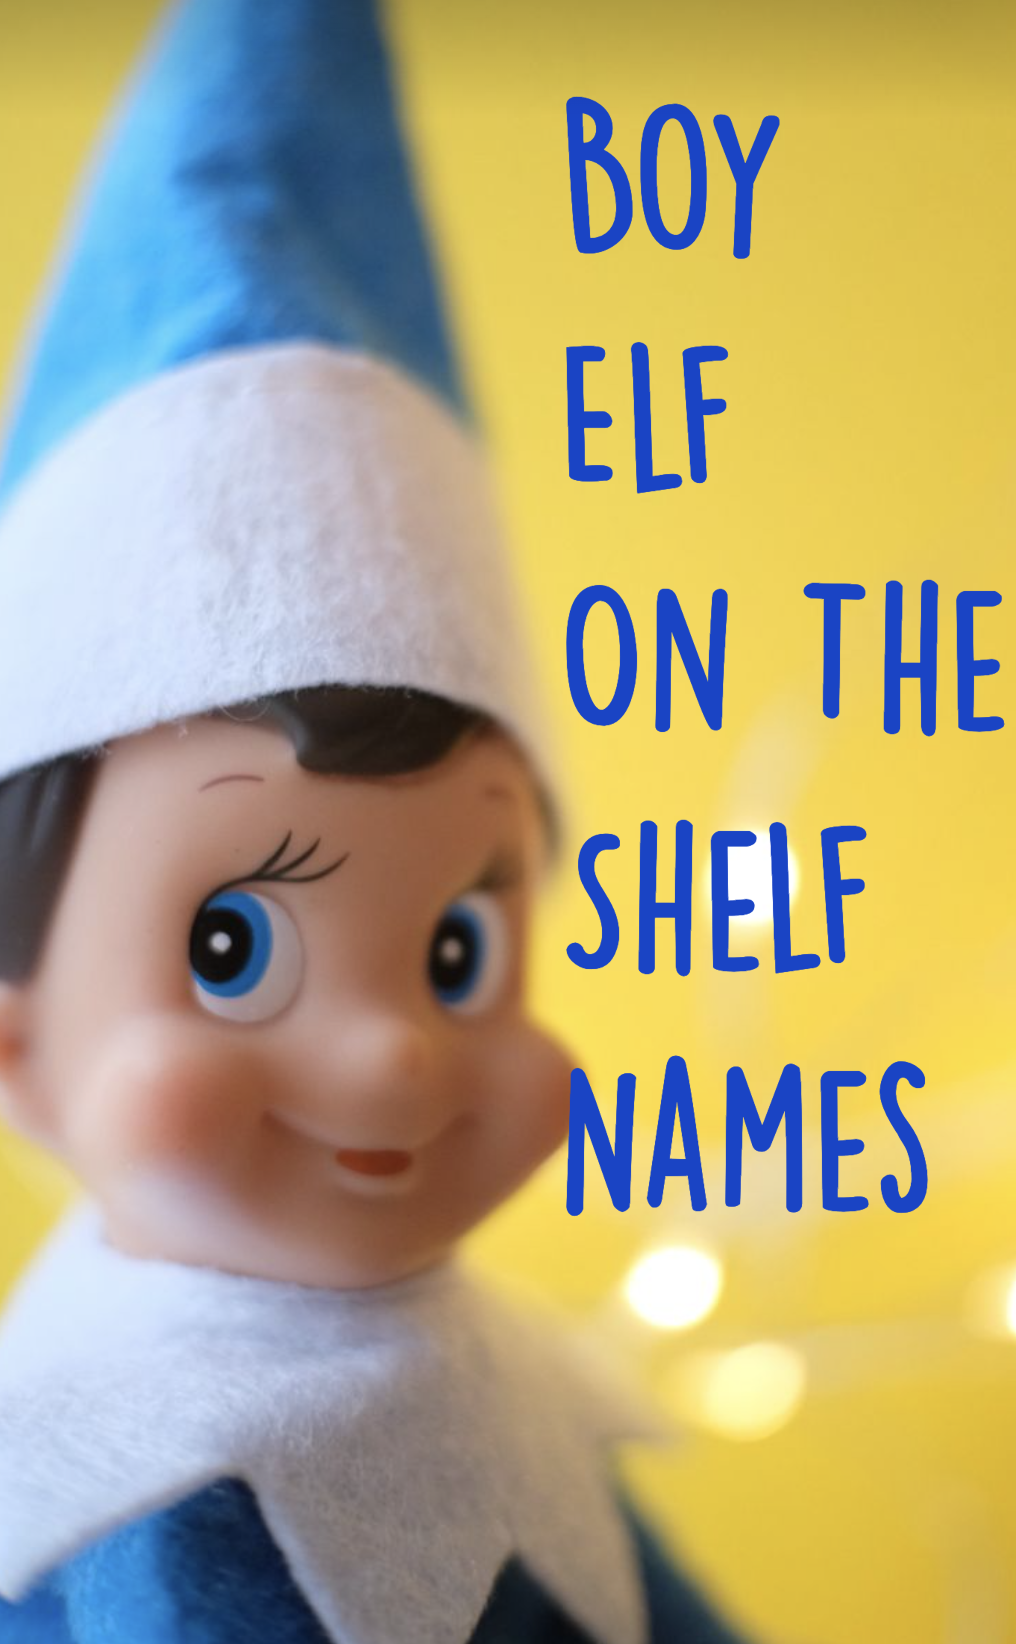 boy-elf-names-110-names-for-boy-elf-on-the-shelves-fun-elf-ideas